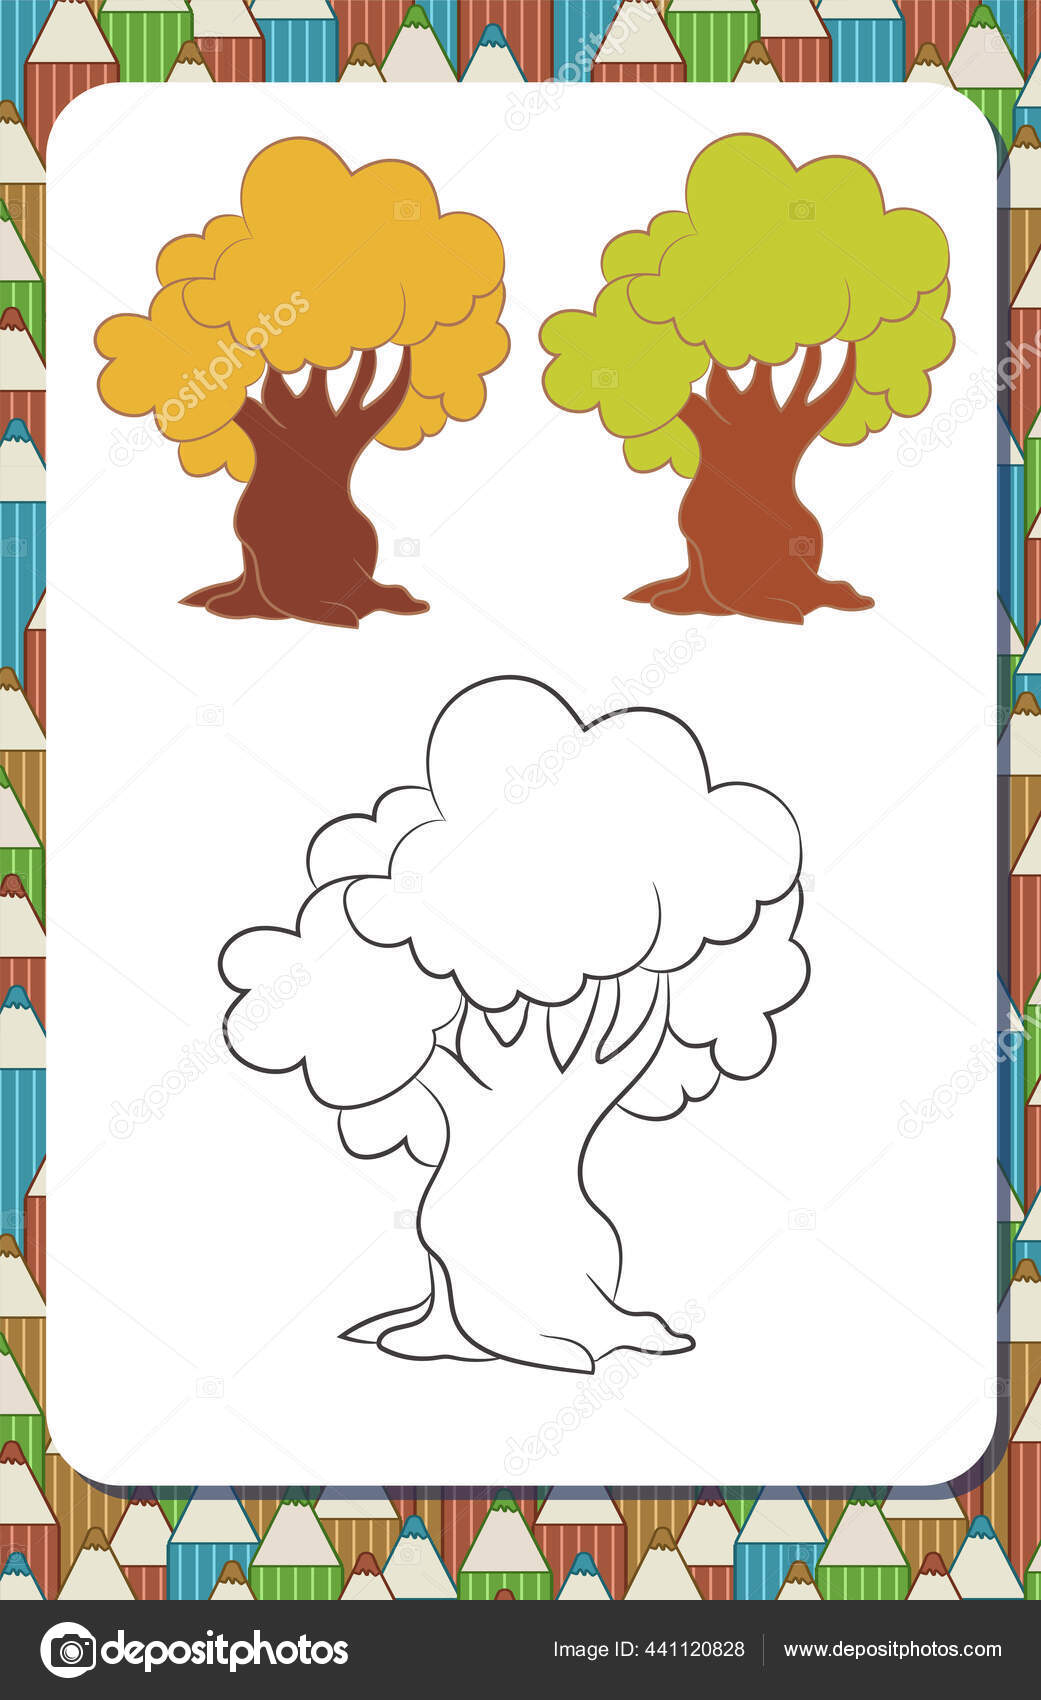 Halaman Potret Buku Mewarnai Dengan Kontur Pohon Kartun Dan Contoh Stok Vektor Zinako 441120828